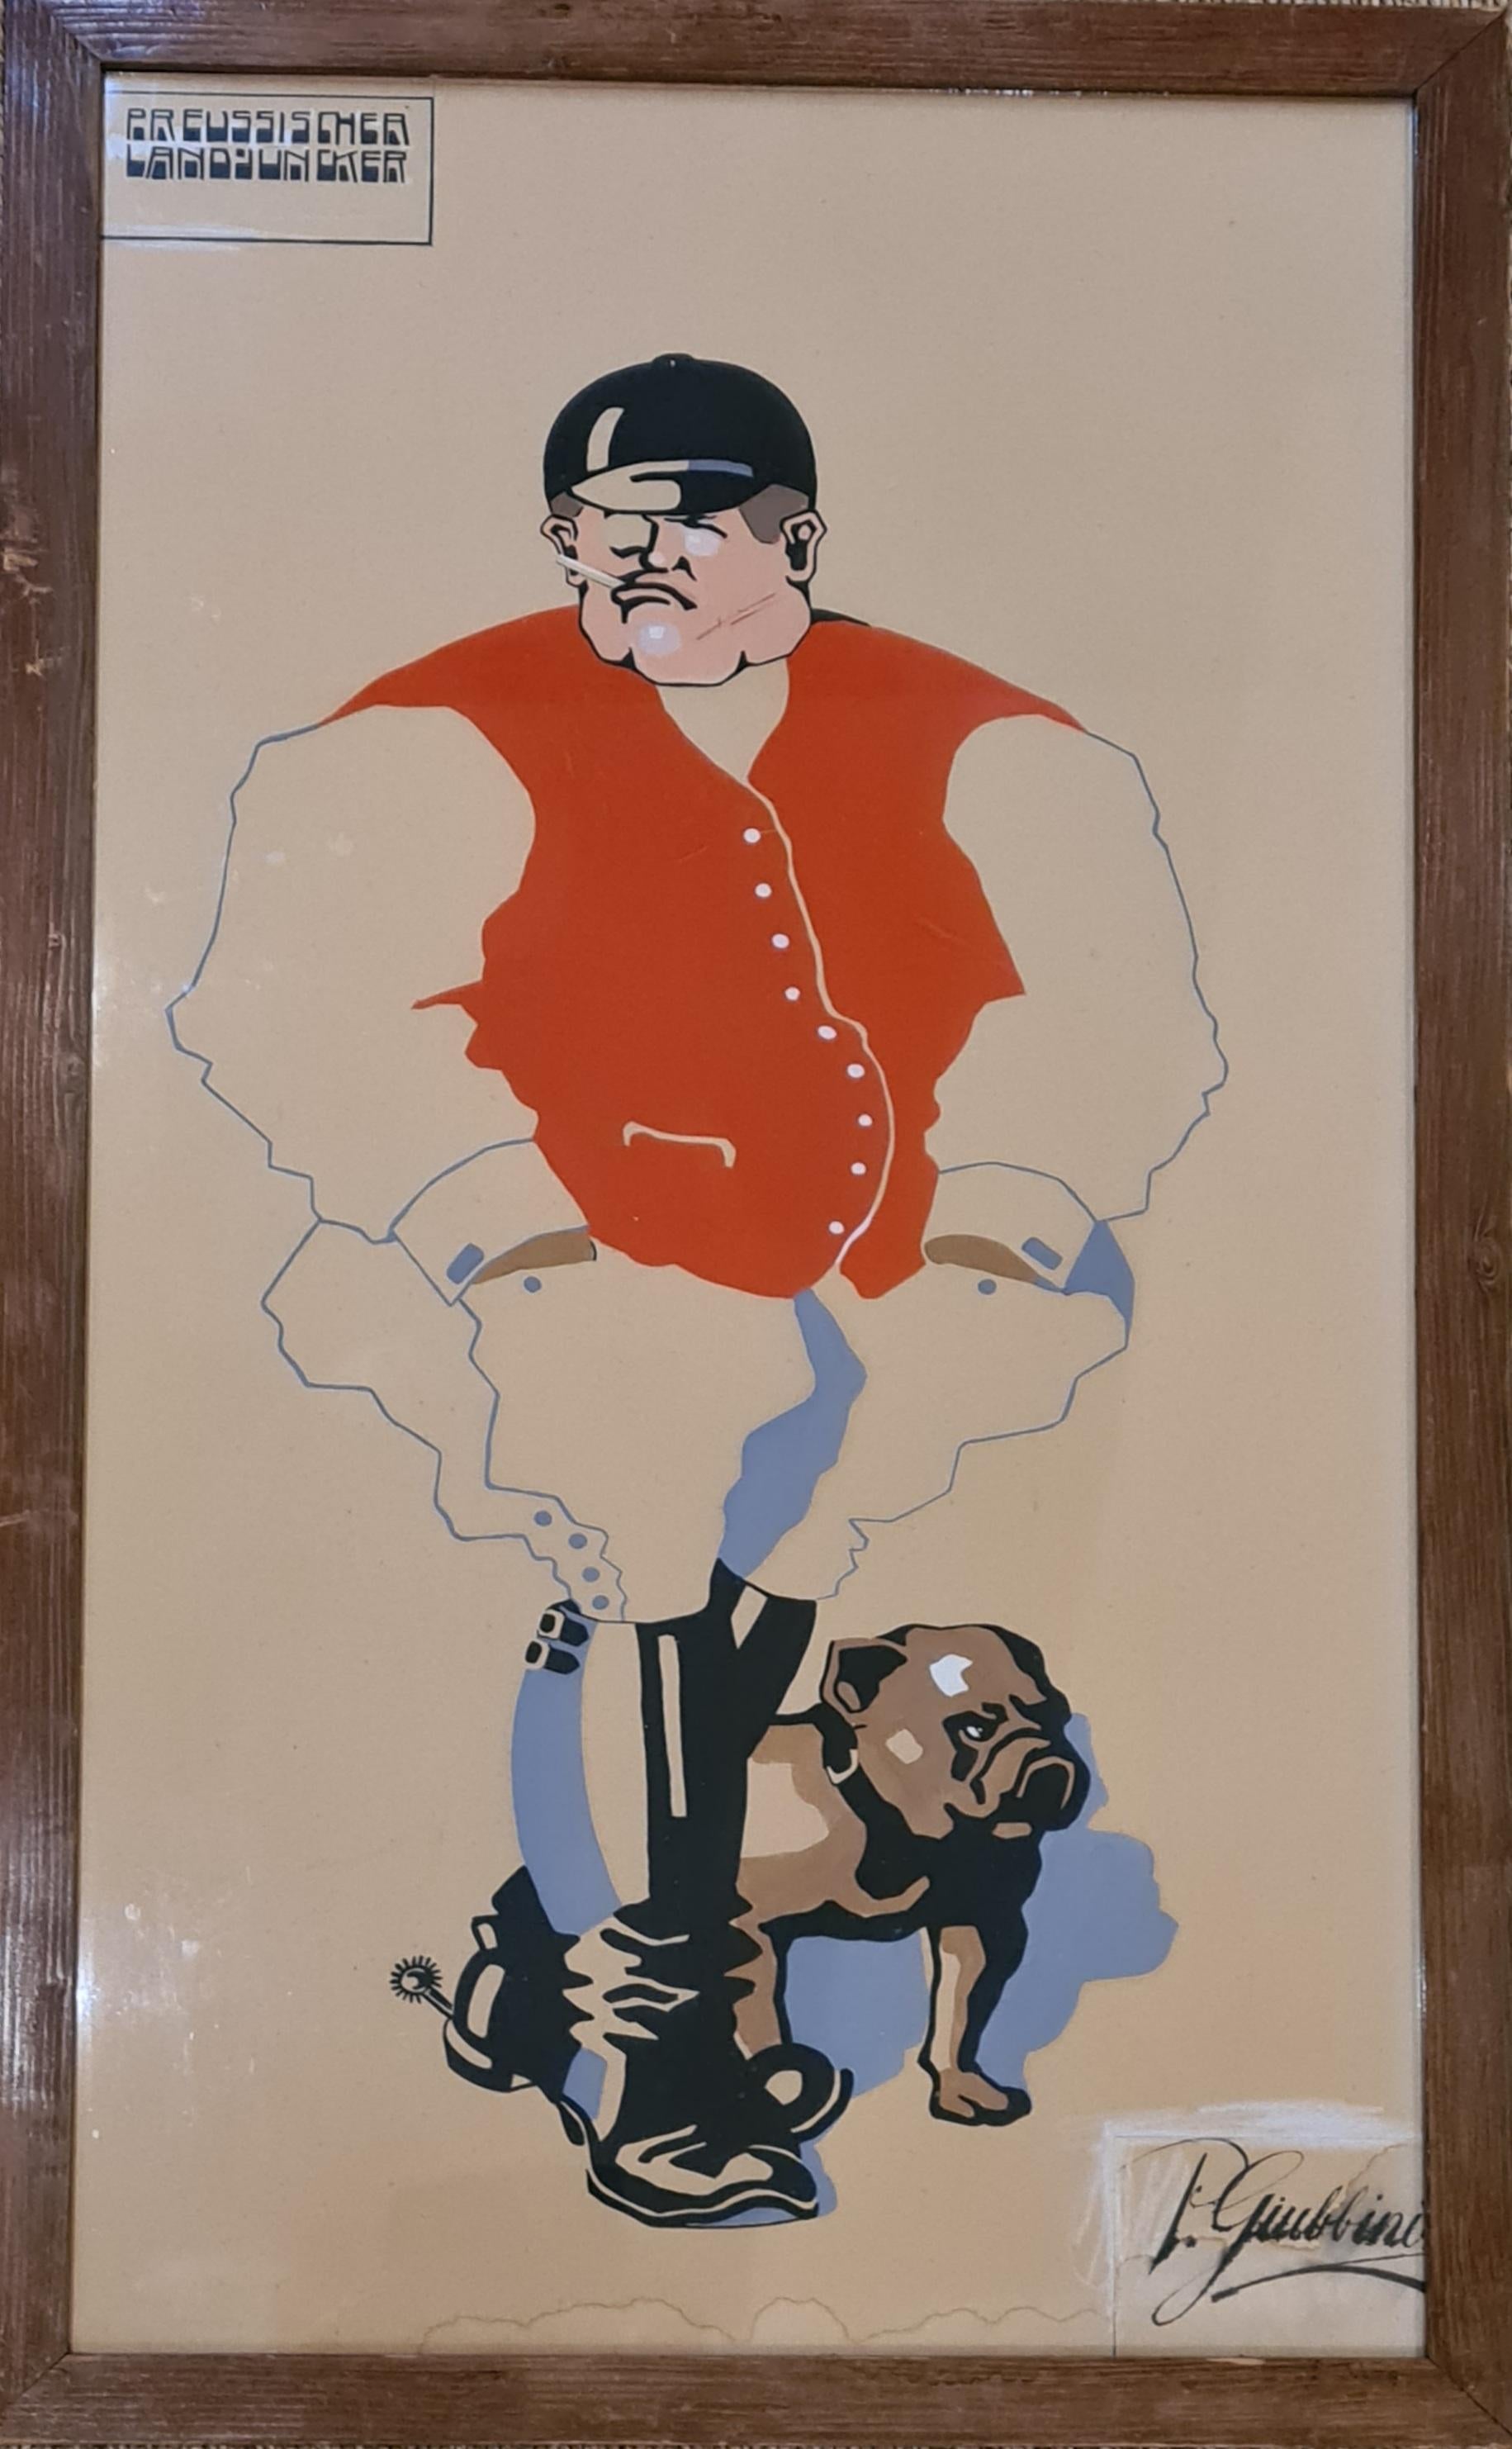 Preussischer Landjuncker, Art déco-Porträt in Gouache auf Papier, Gouache – Painting von P Giubbini